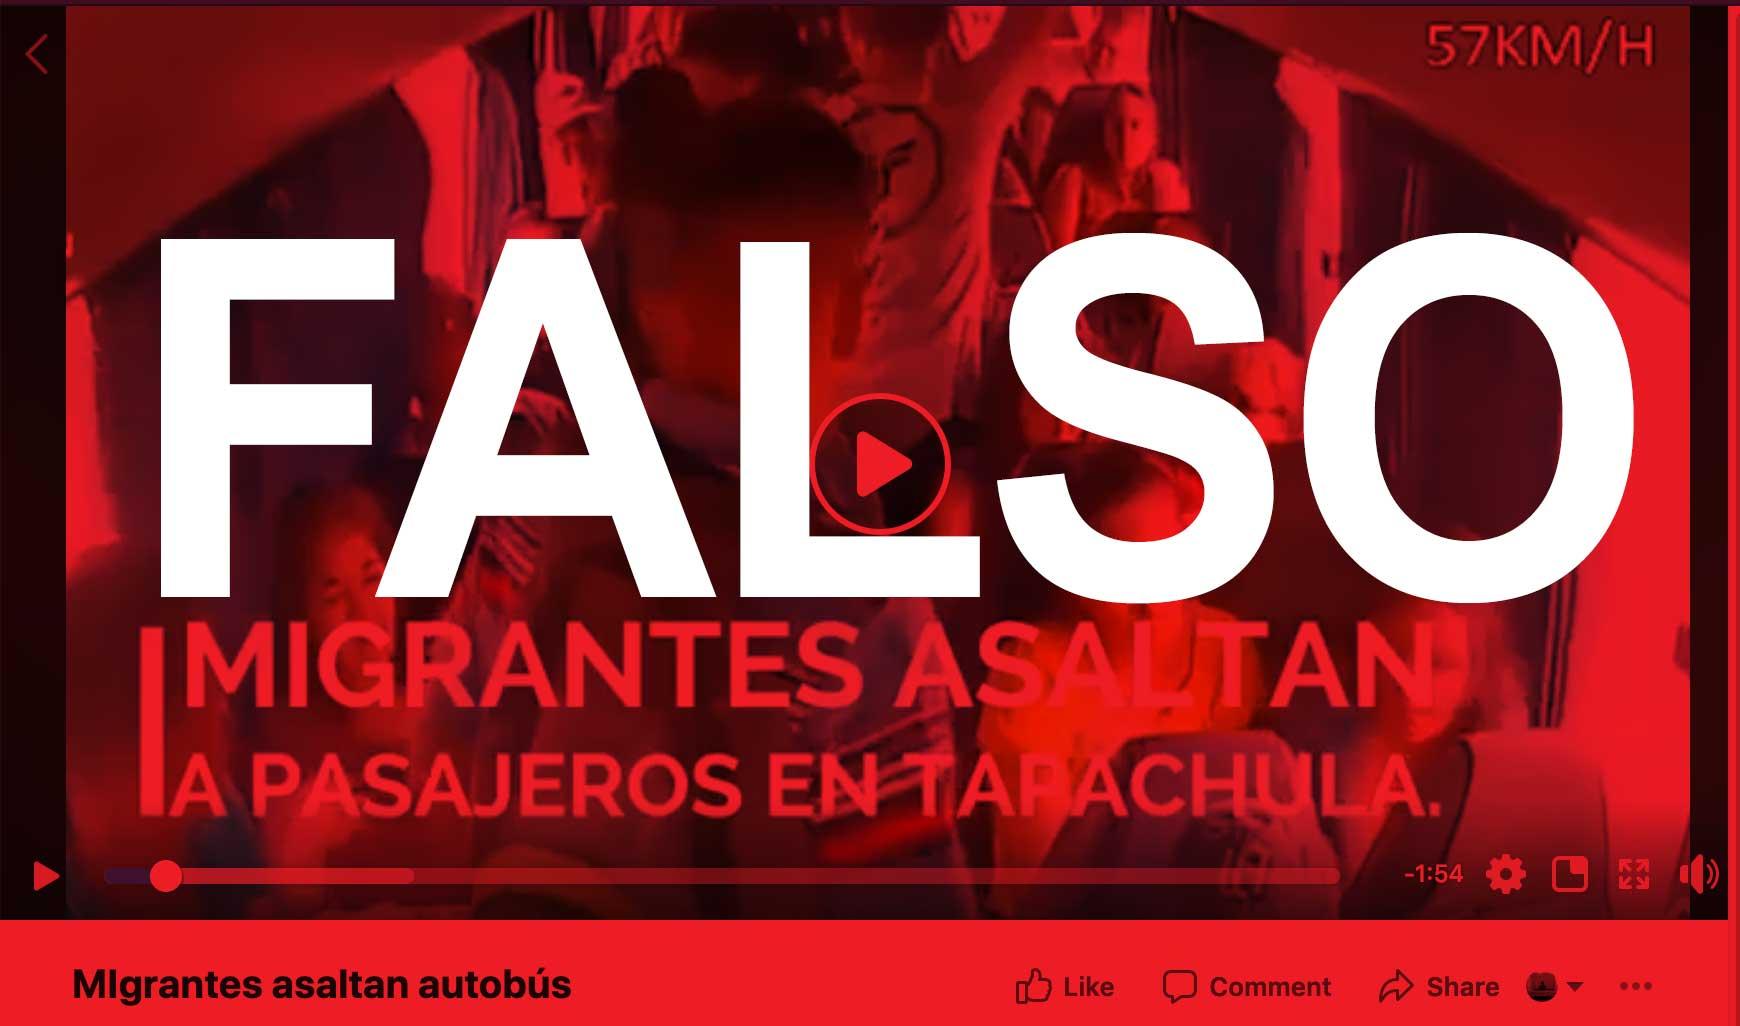 Falso que migrantes robaron un autobús en Chiapas, como dice una publicación en Facebook